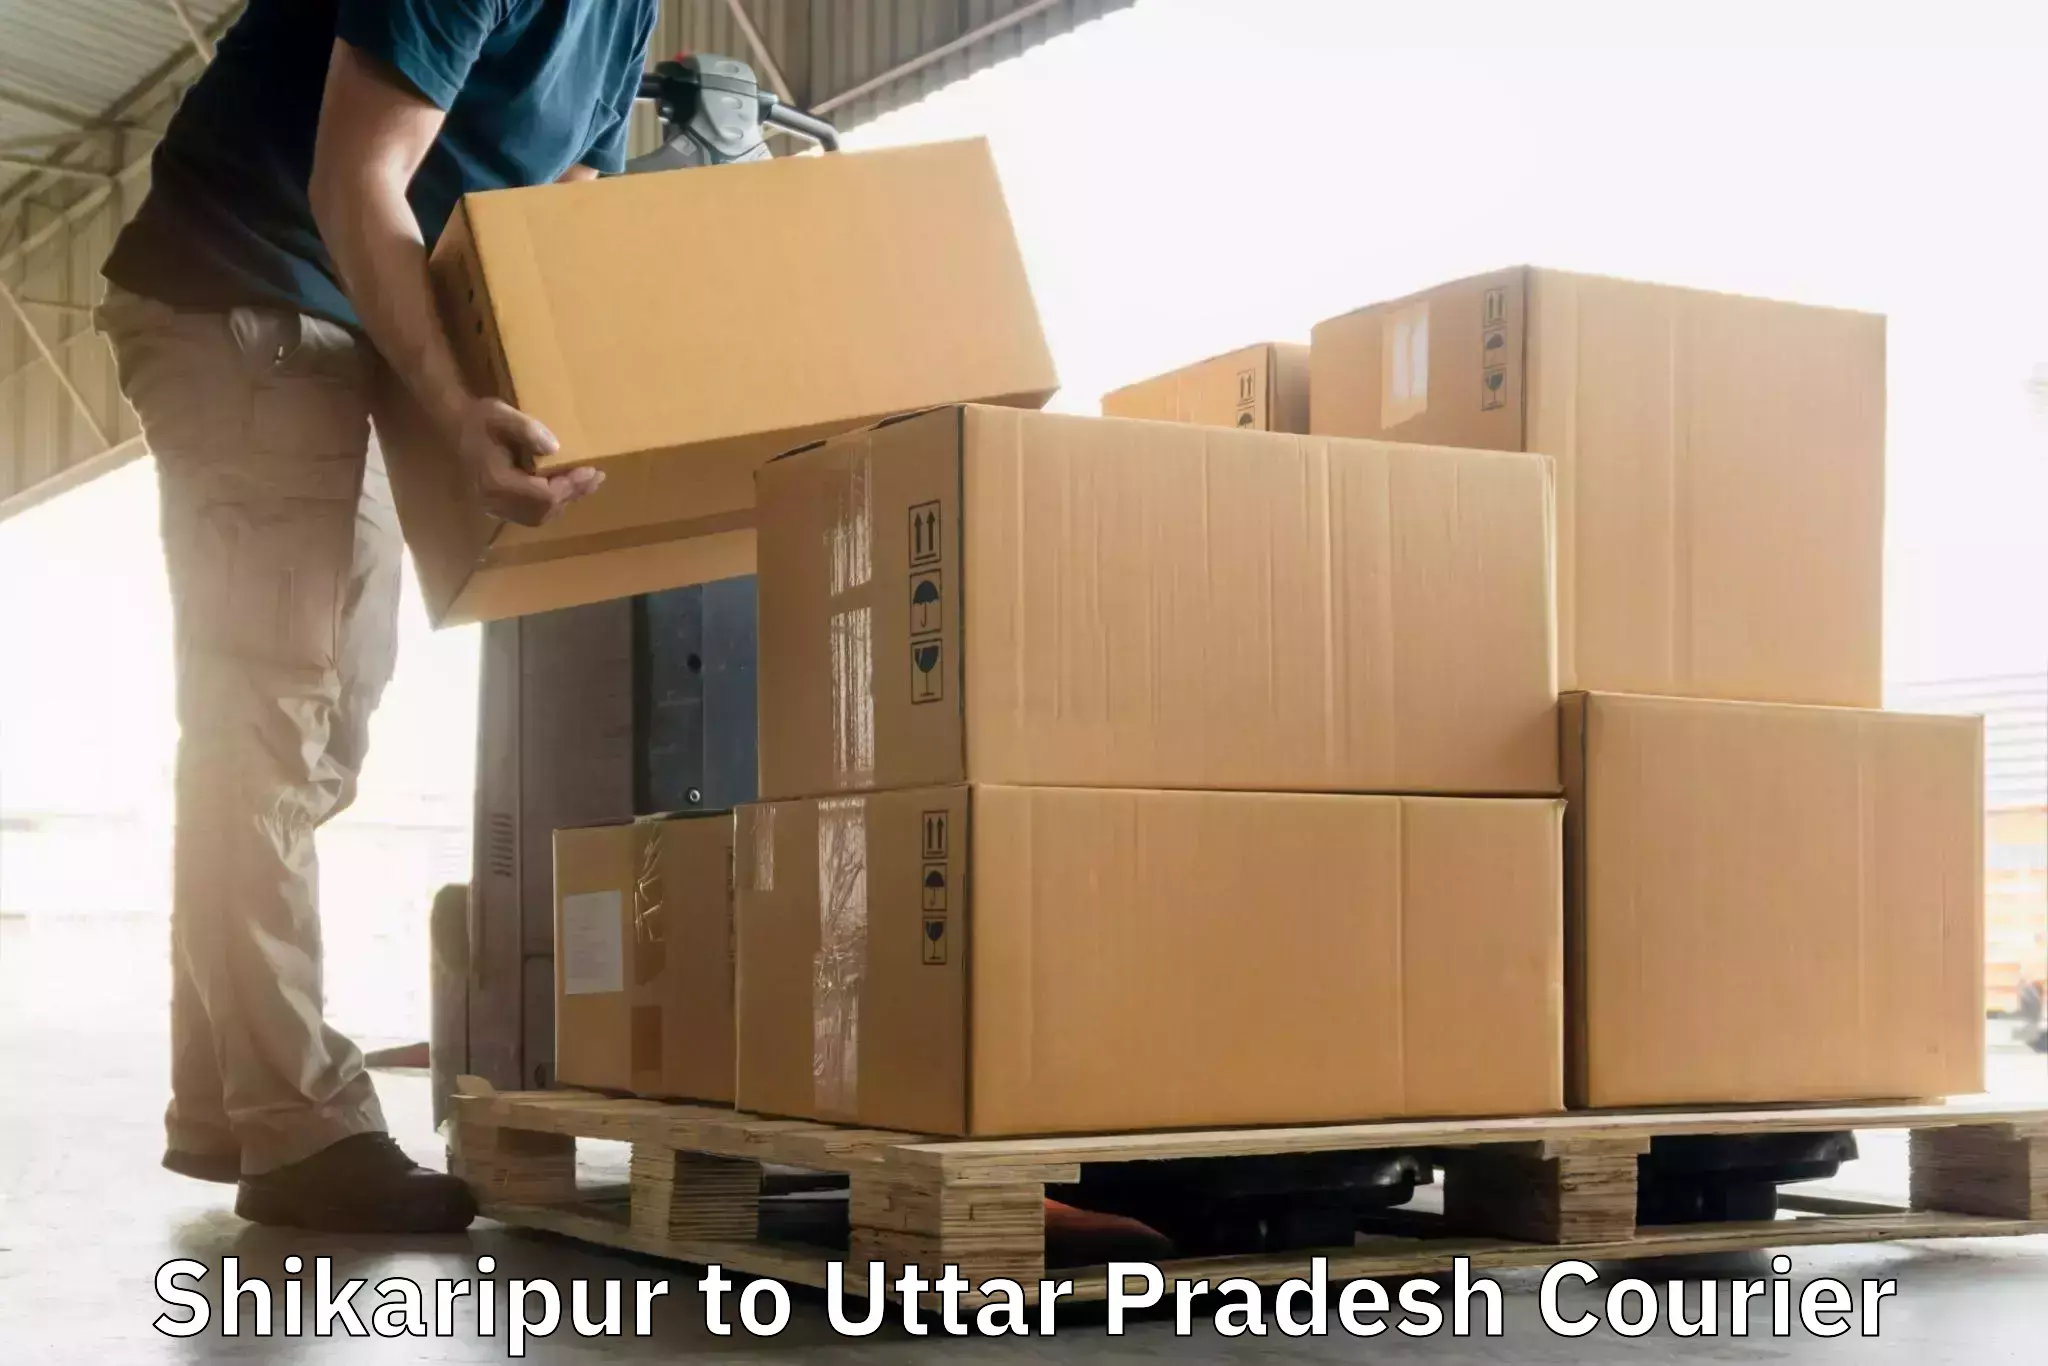 Door-to-door freight service Shikaripur to Maholi